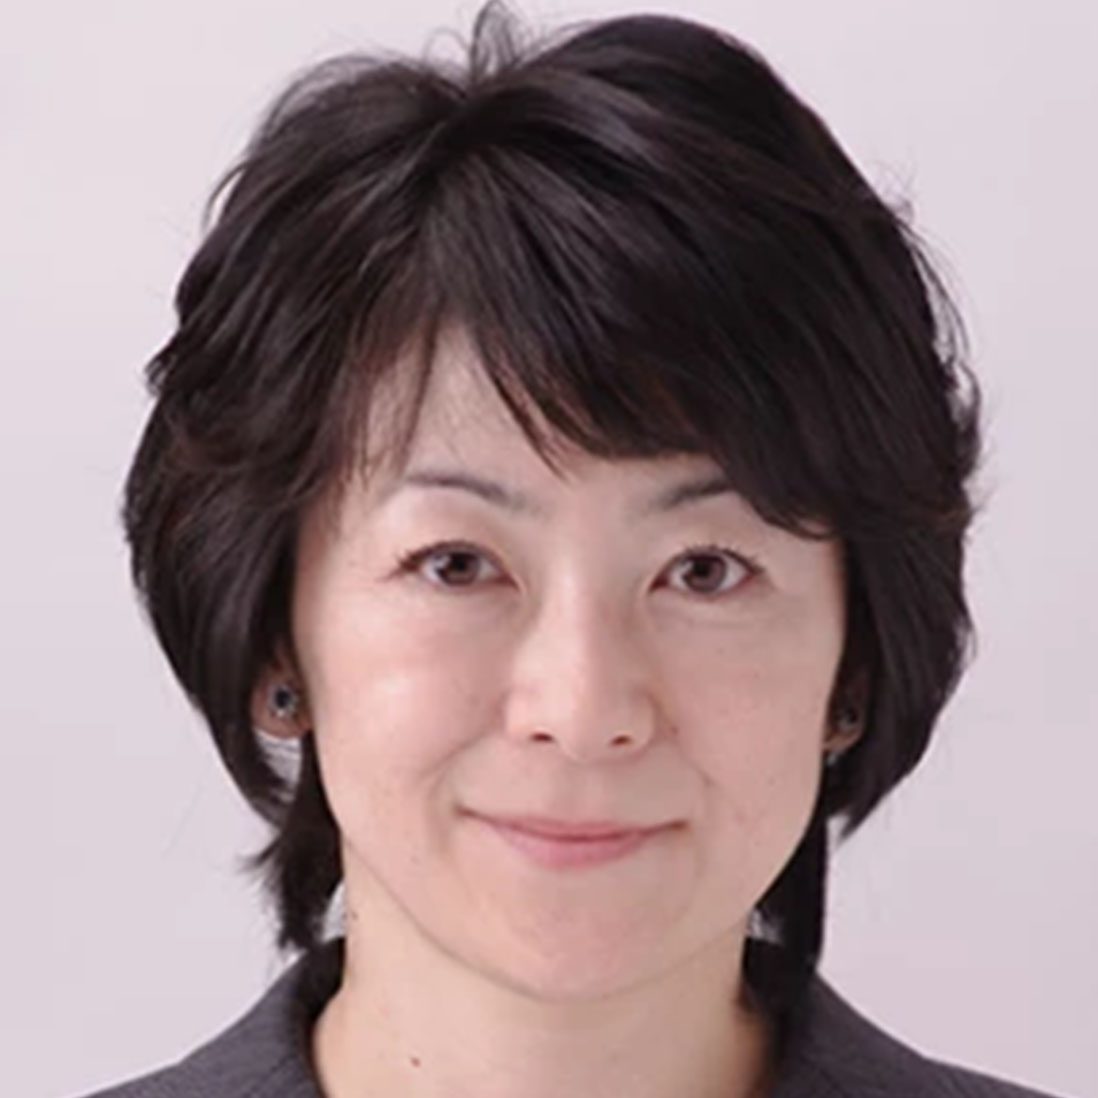 Reiko Akiike